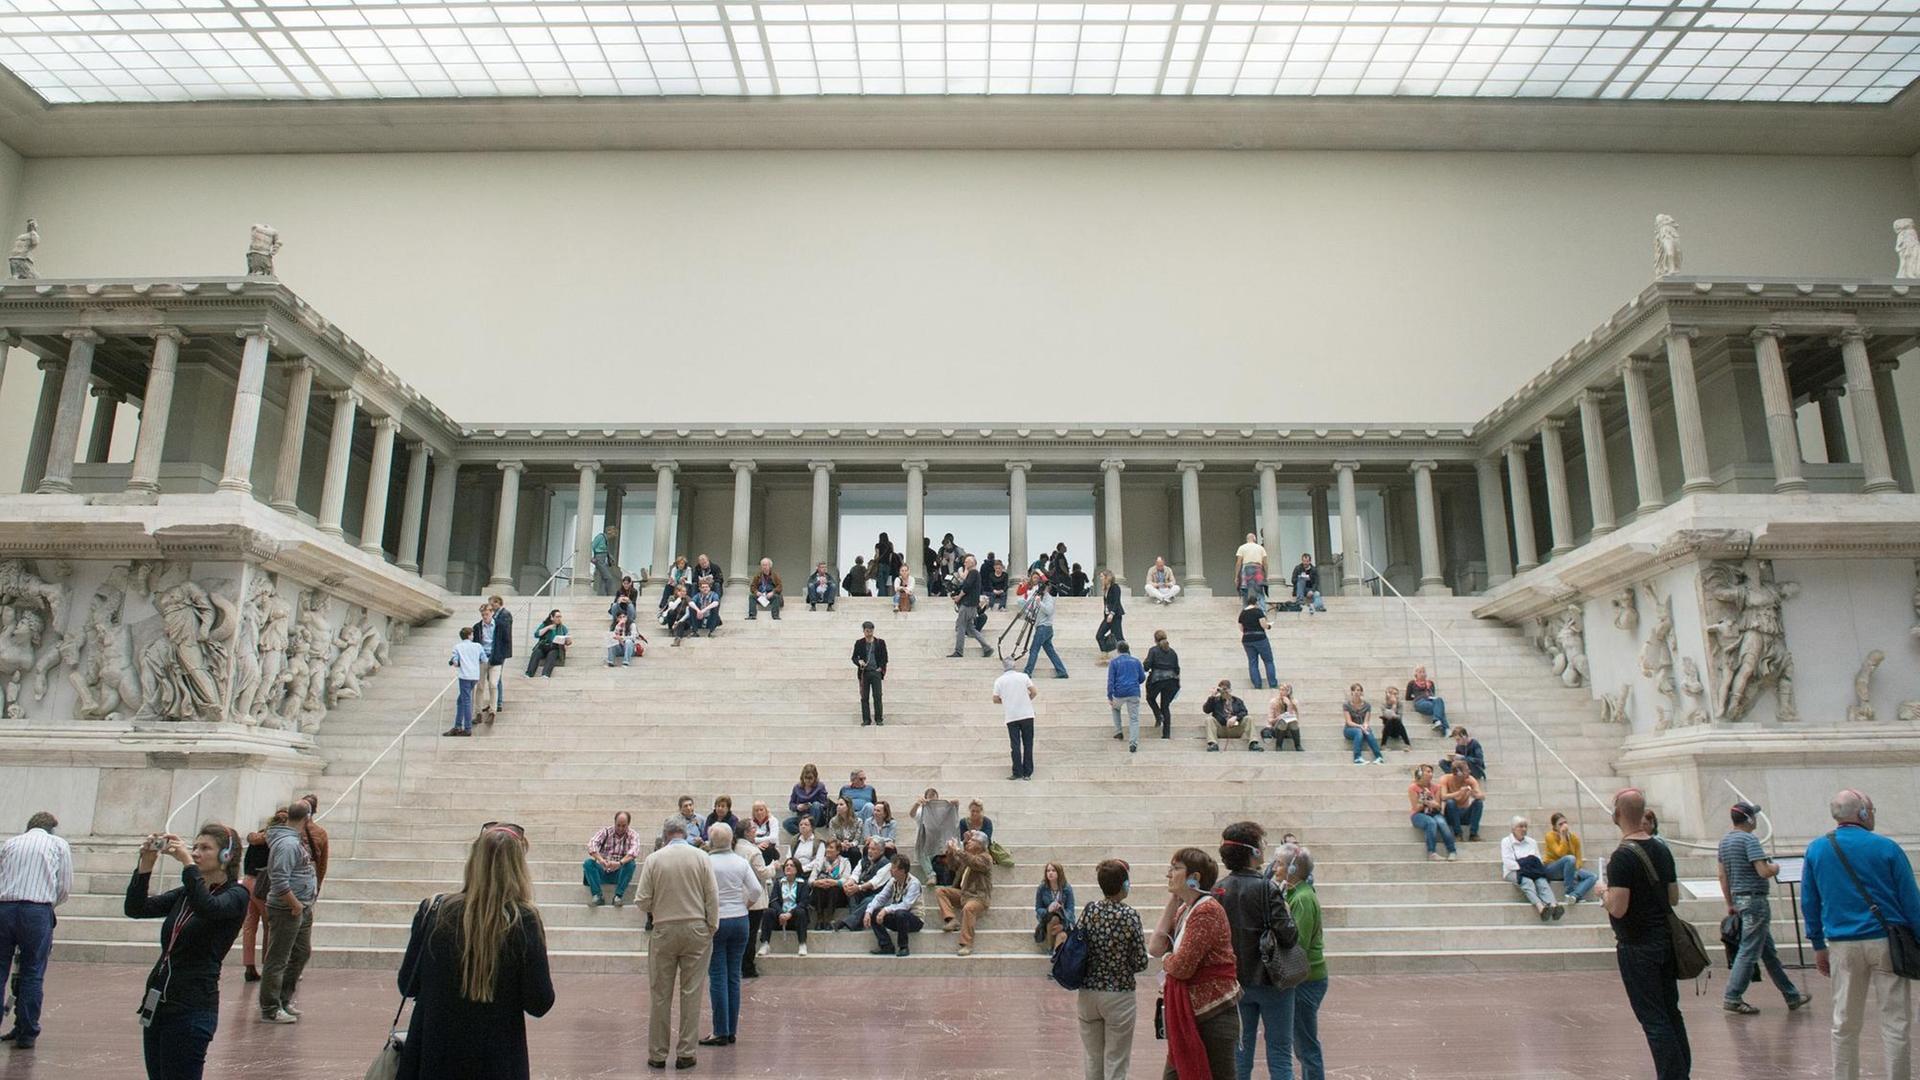 Ansicht des Pergamonaltars im Pergamonmuseum in Berlin. Auf den Stufen sitzen und stehen Museumsbesucher. Quelle: picture alliance